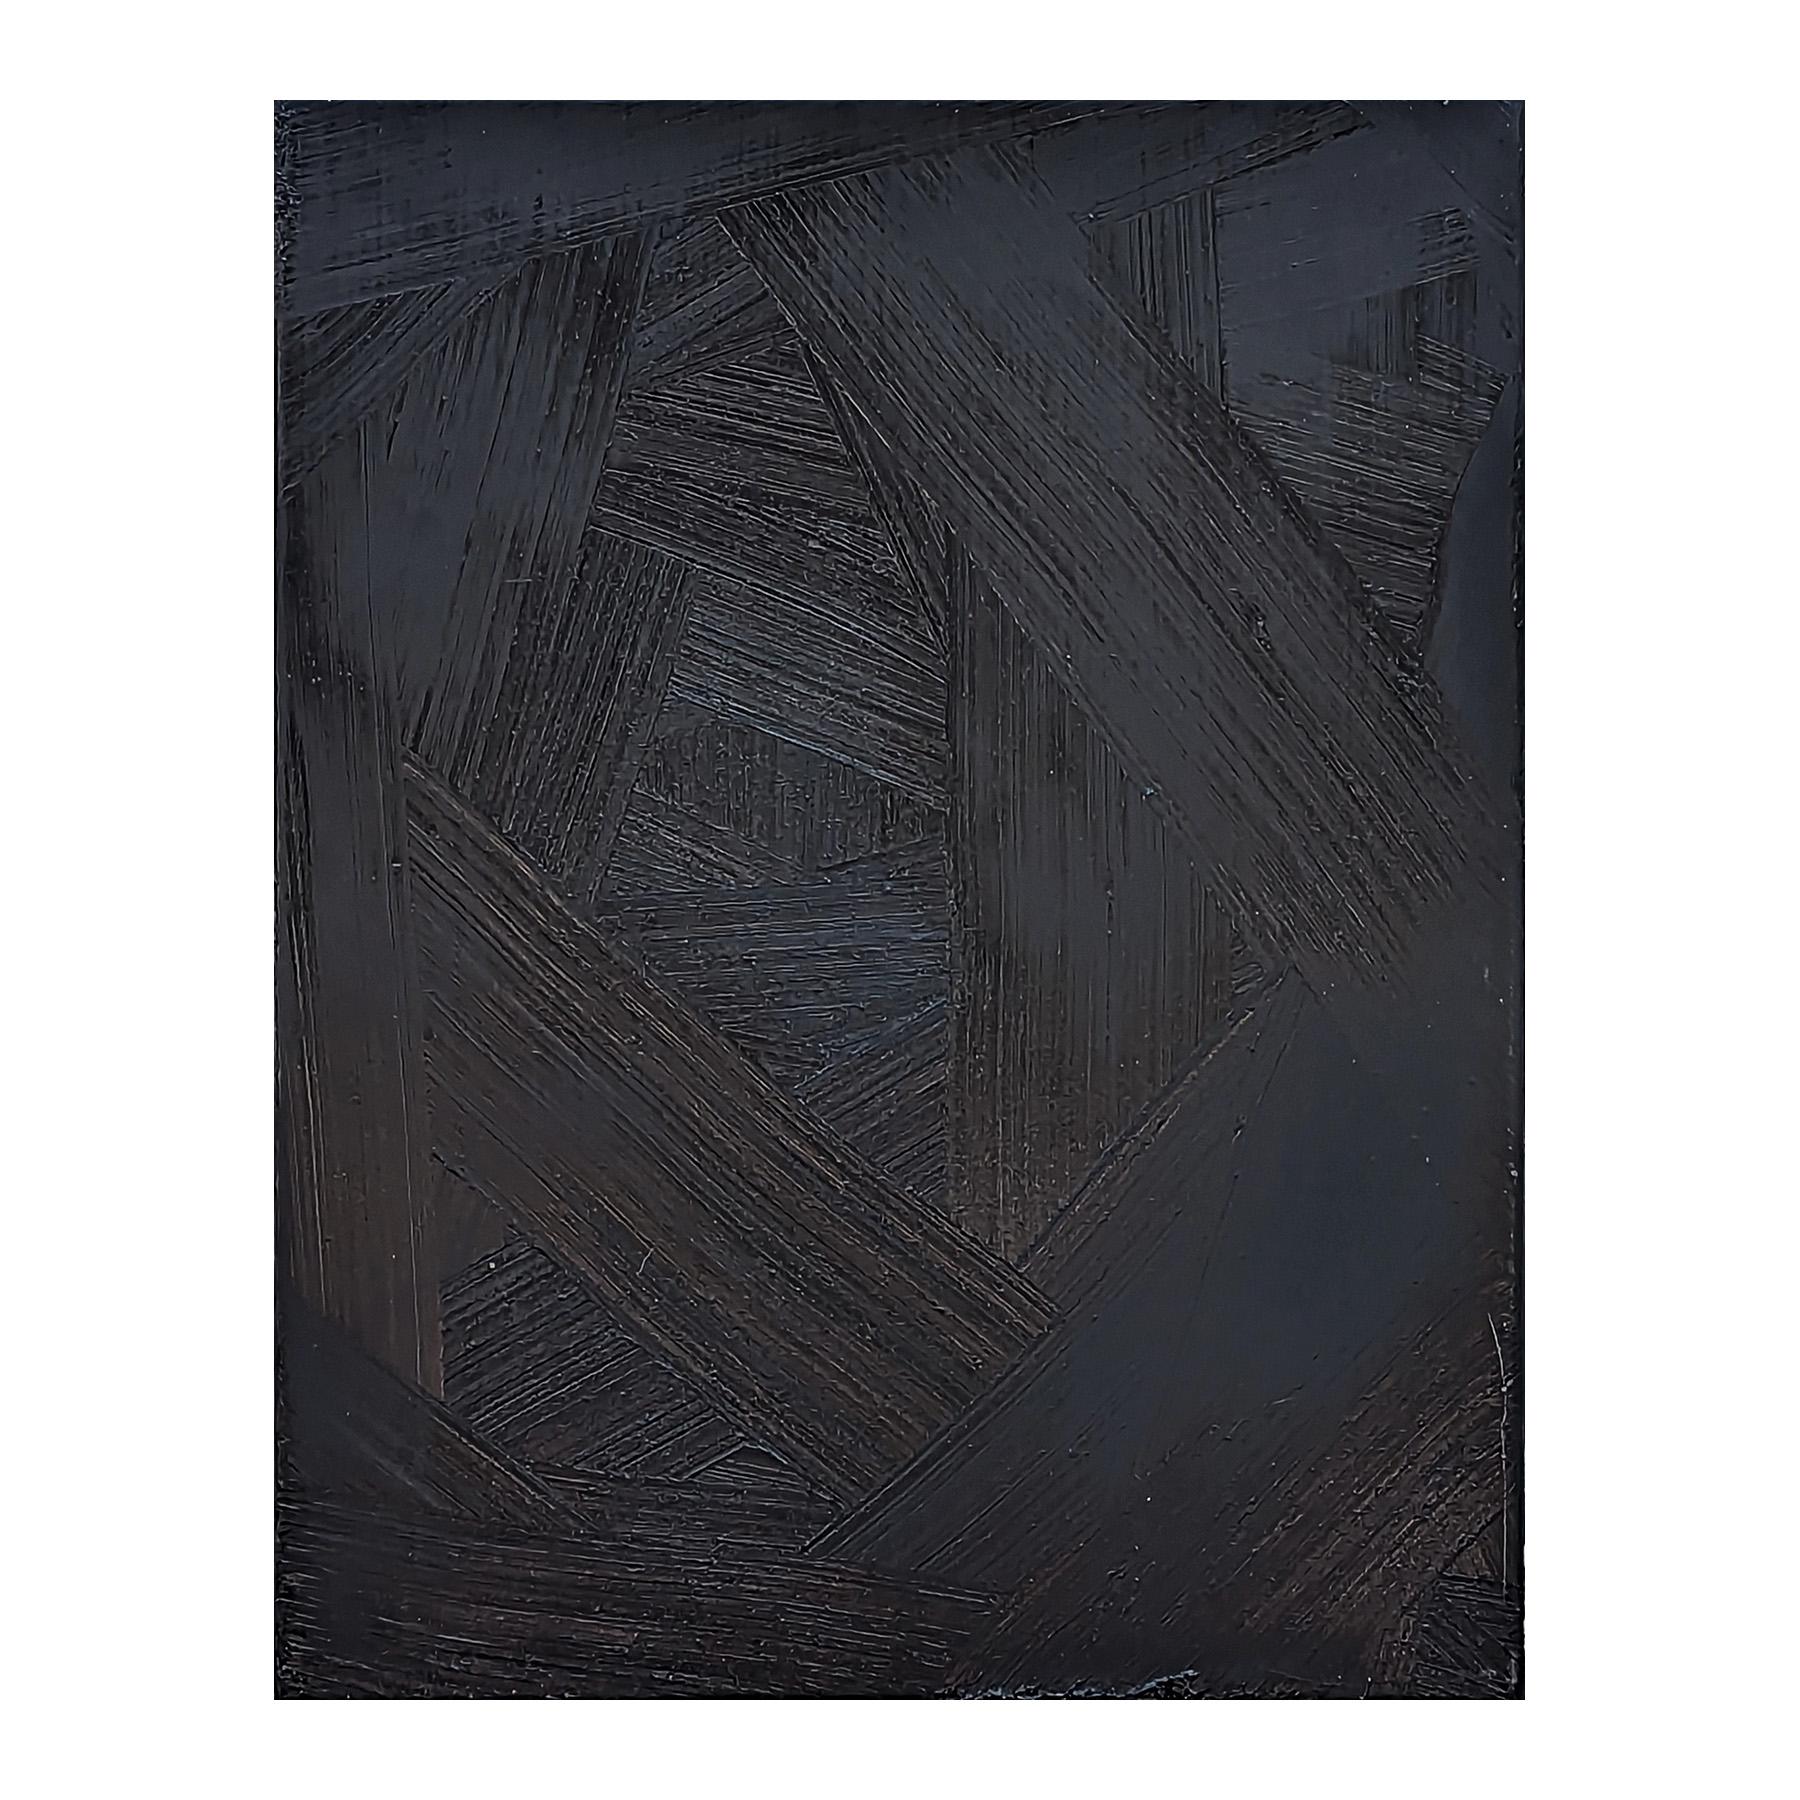 Schwarzes, strukturiertes Impasto-Gemälde des zeitgenössischen Künstlers Paul Wiener. Das Werk zeichnet sich durch eine dicke Schicht intensiv pigmentierter Farbe aus, in der der Betrachter die Pinselstriche des Künstlers leicht erkennen kann. Der